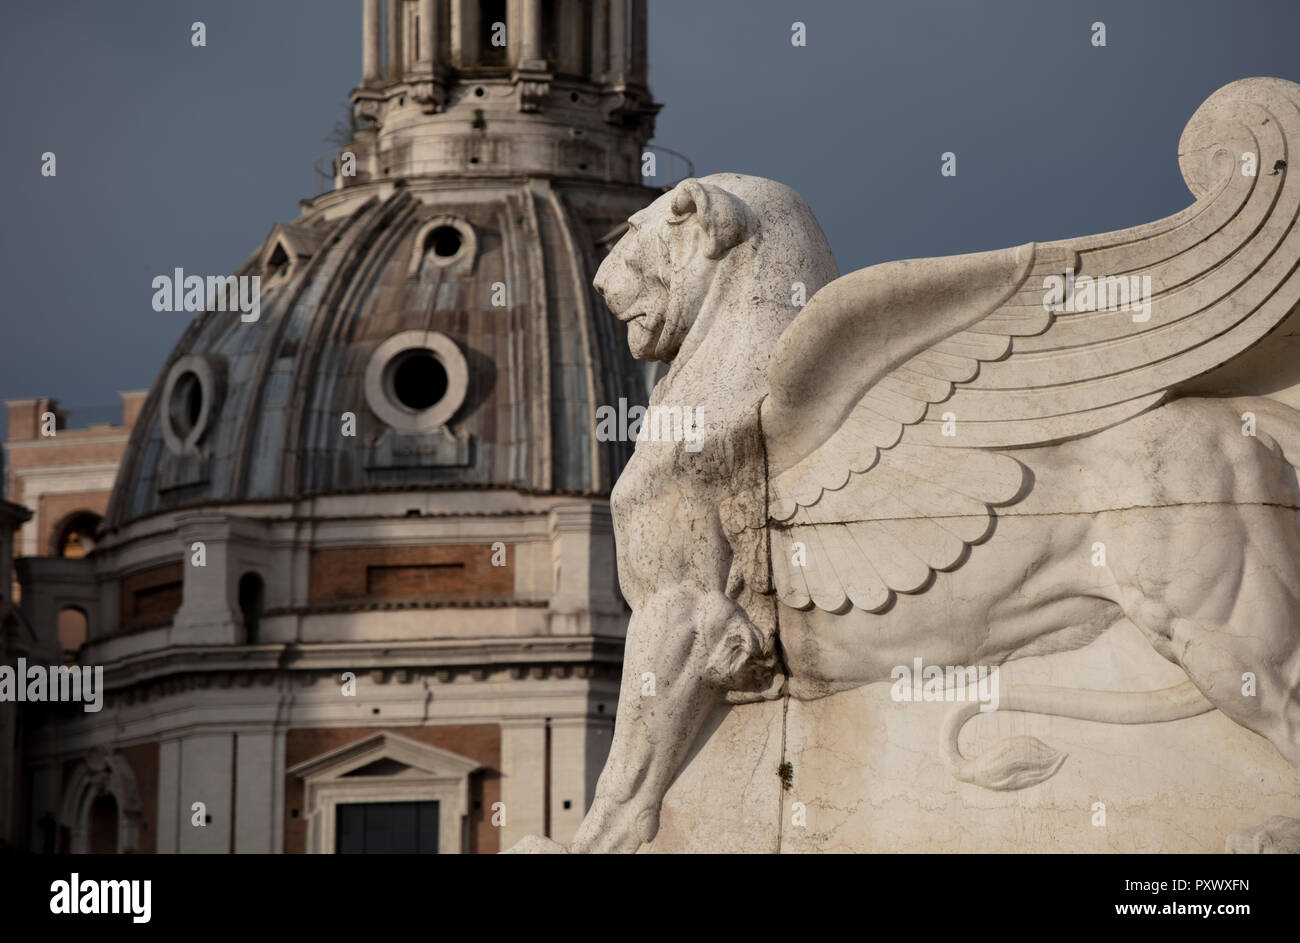 Un leone alato statua alla base dell'Altare della Patria in piazza Venezia a Roma. In fondo è la cupola barocca di Santa Maria di Loreto. Foto Stock